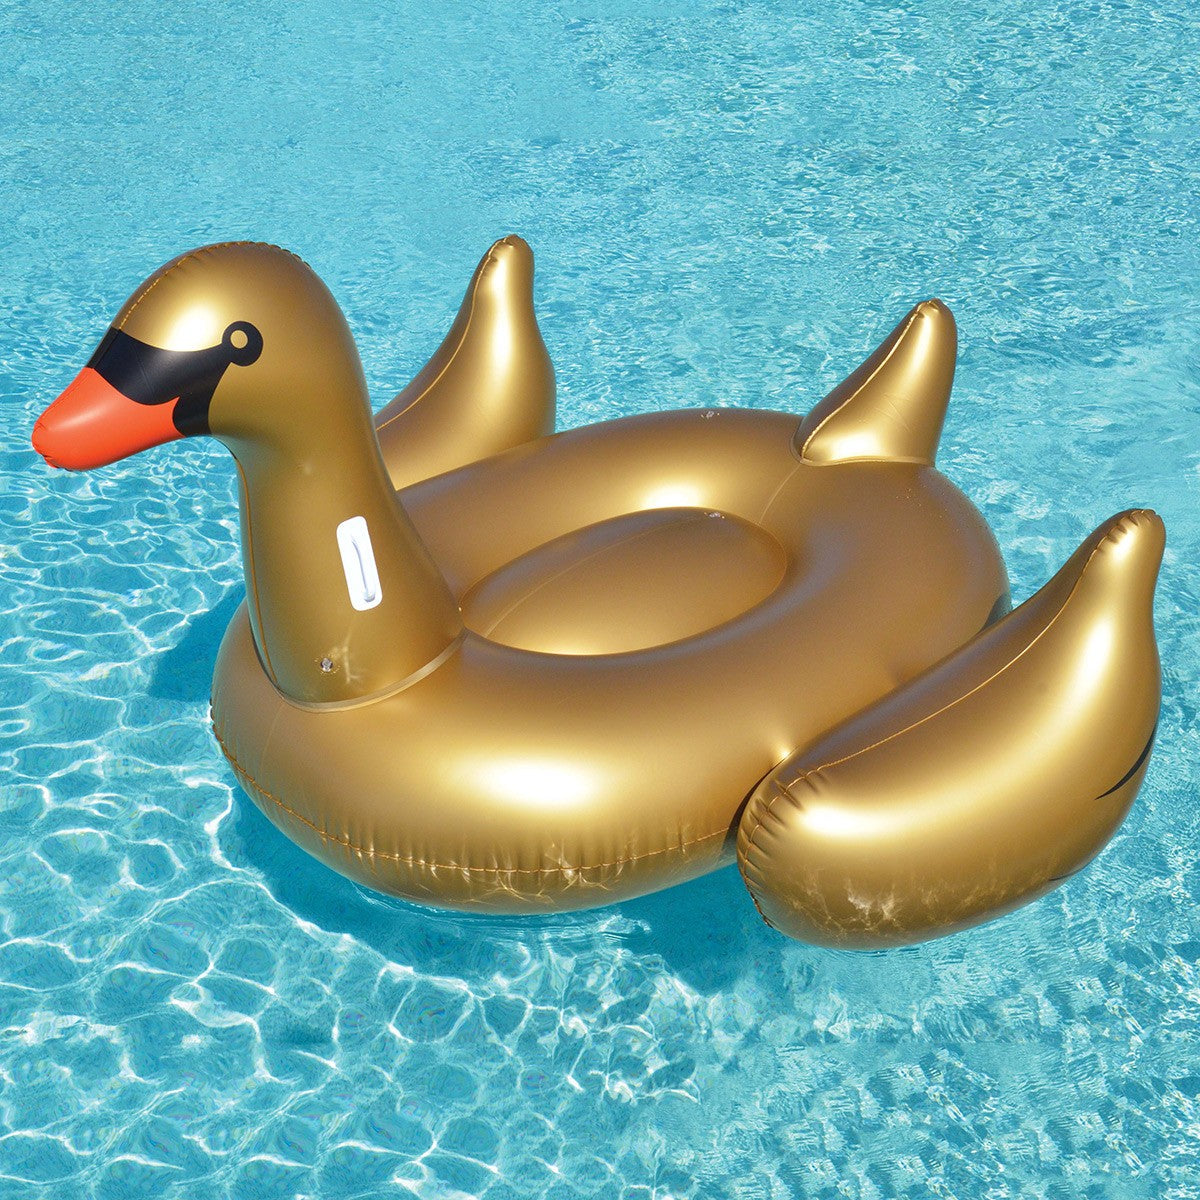 Swimline Giant Golden Goose Ride-On